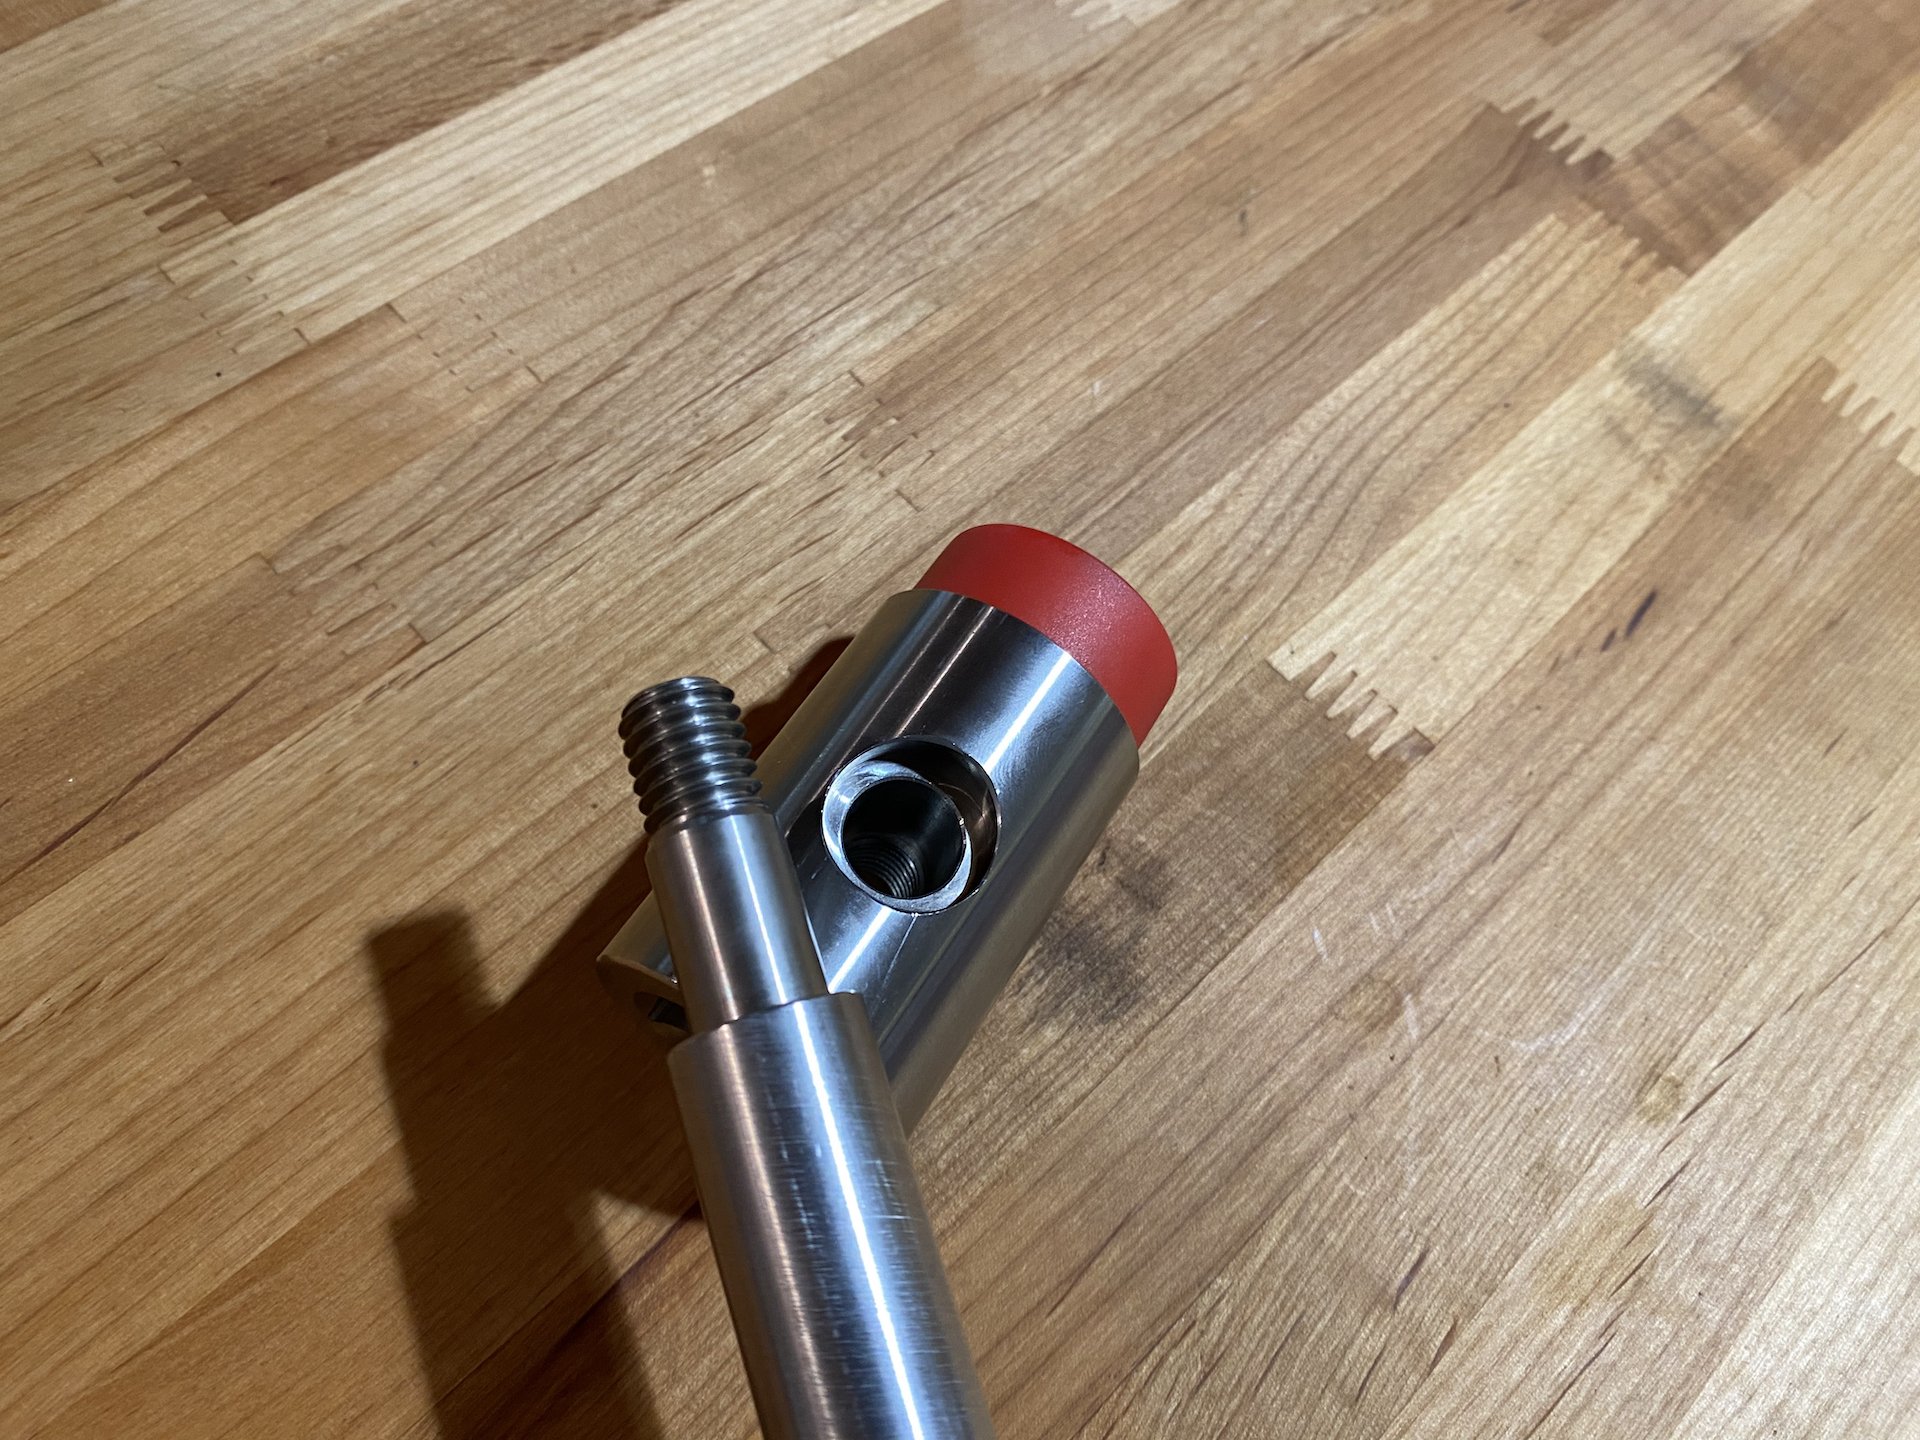 Enduro bbb-222 bearing puller tool